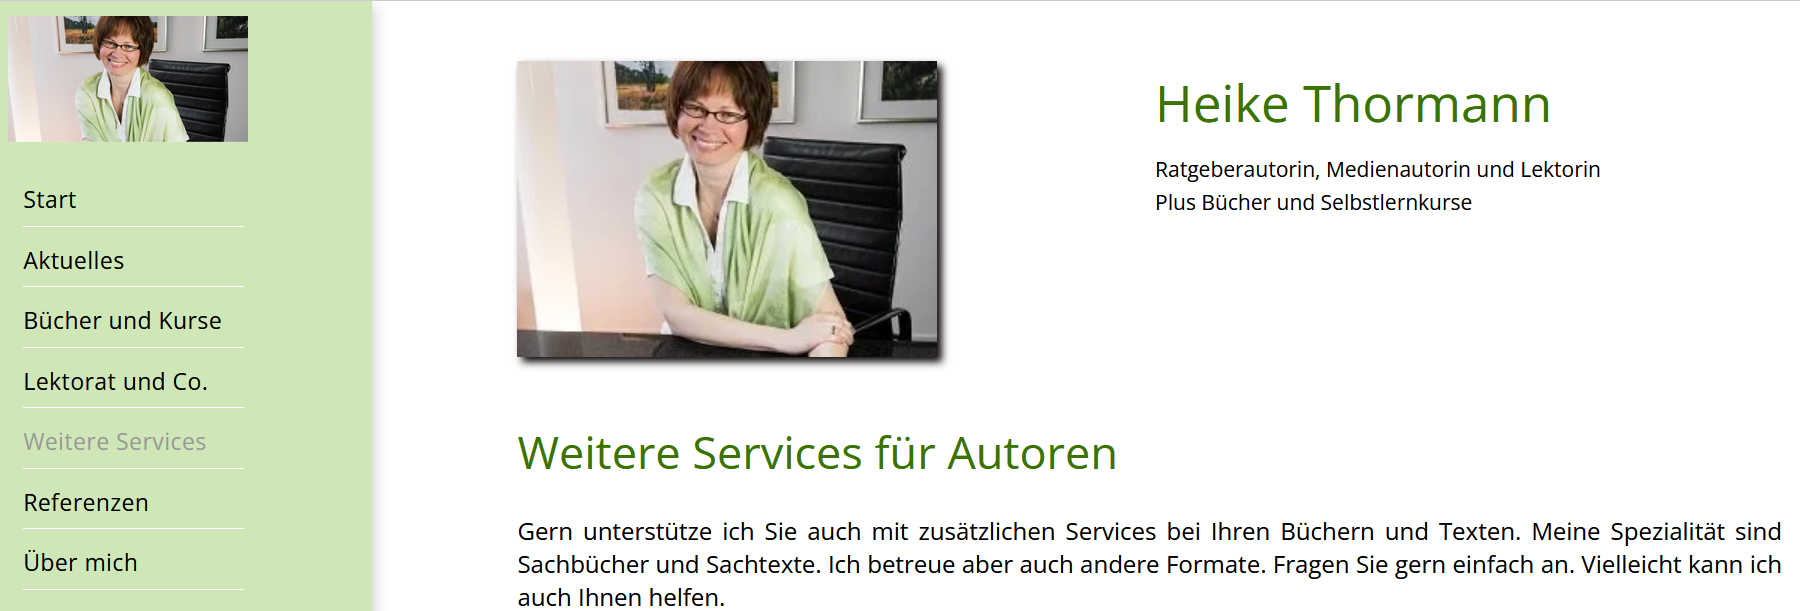 Heike Thormann - Services für Autoren